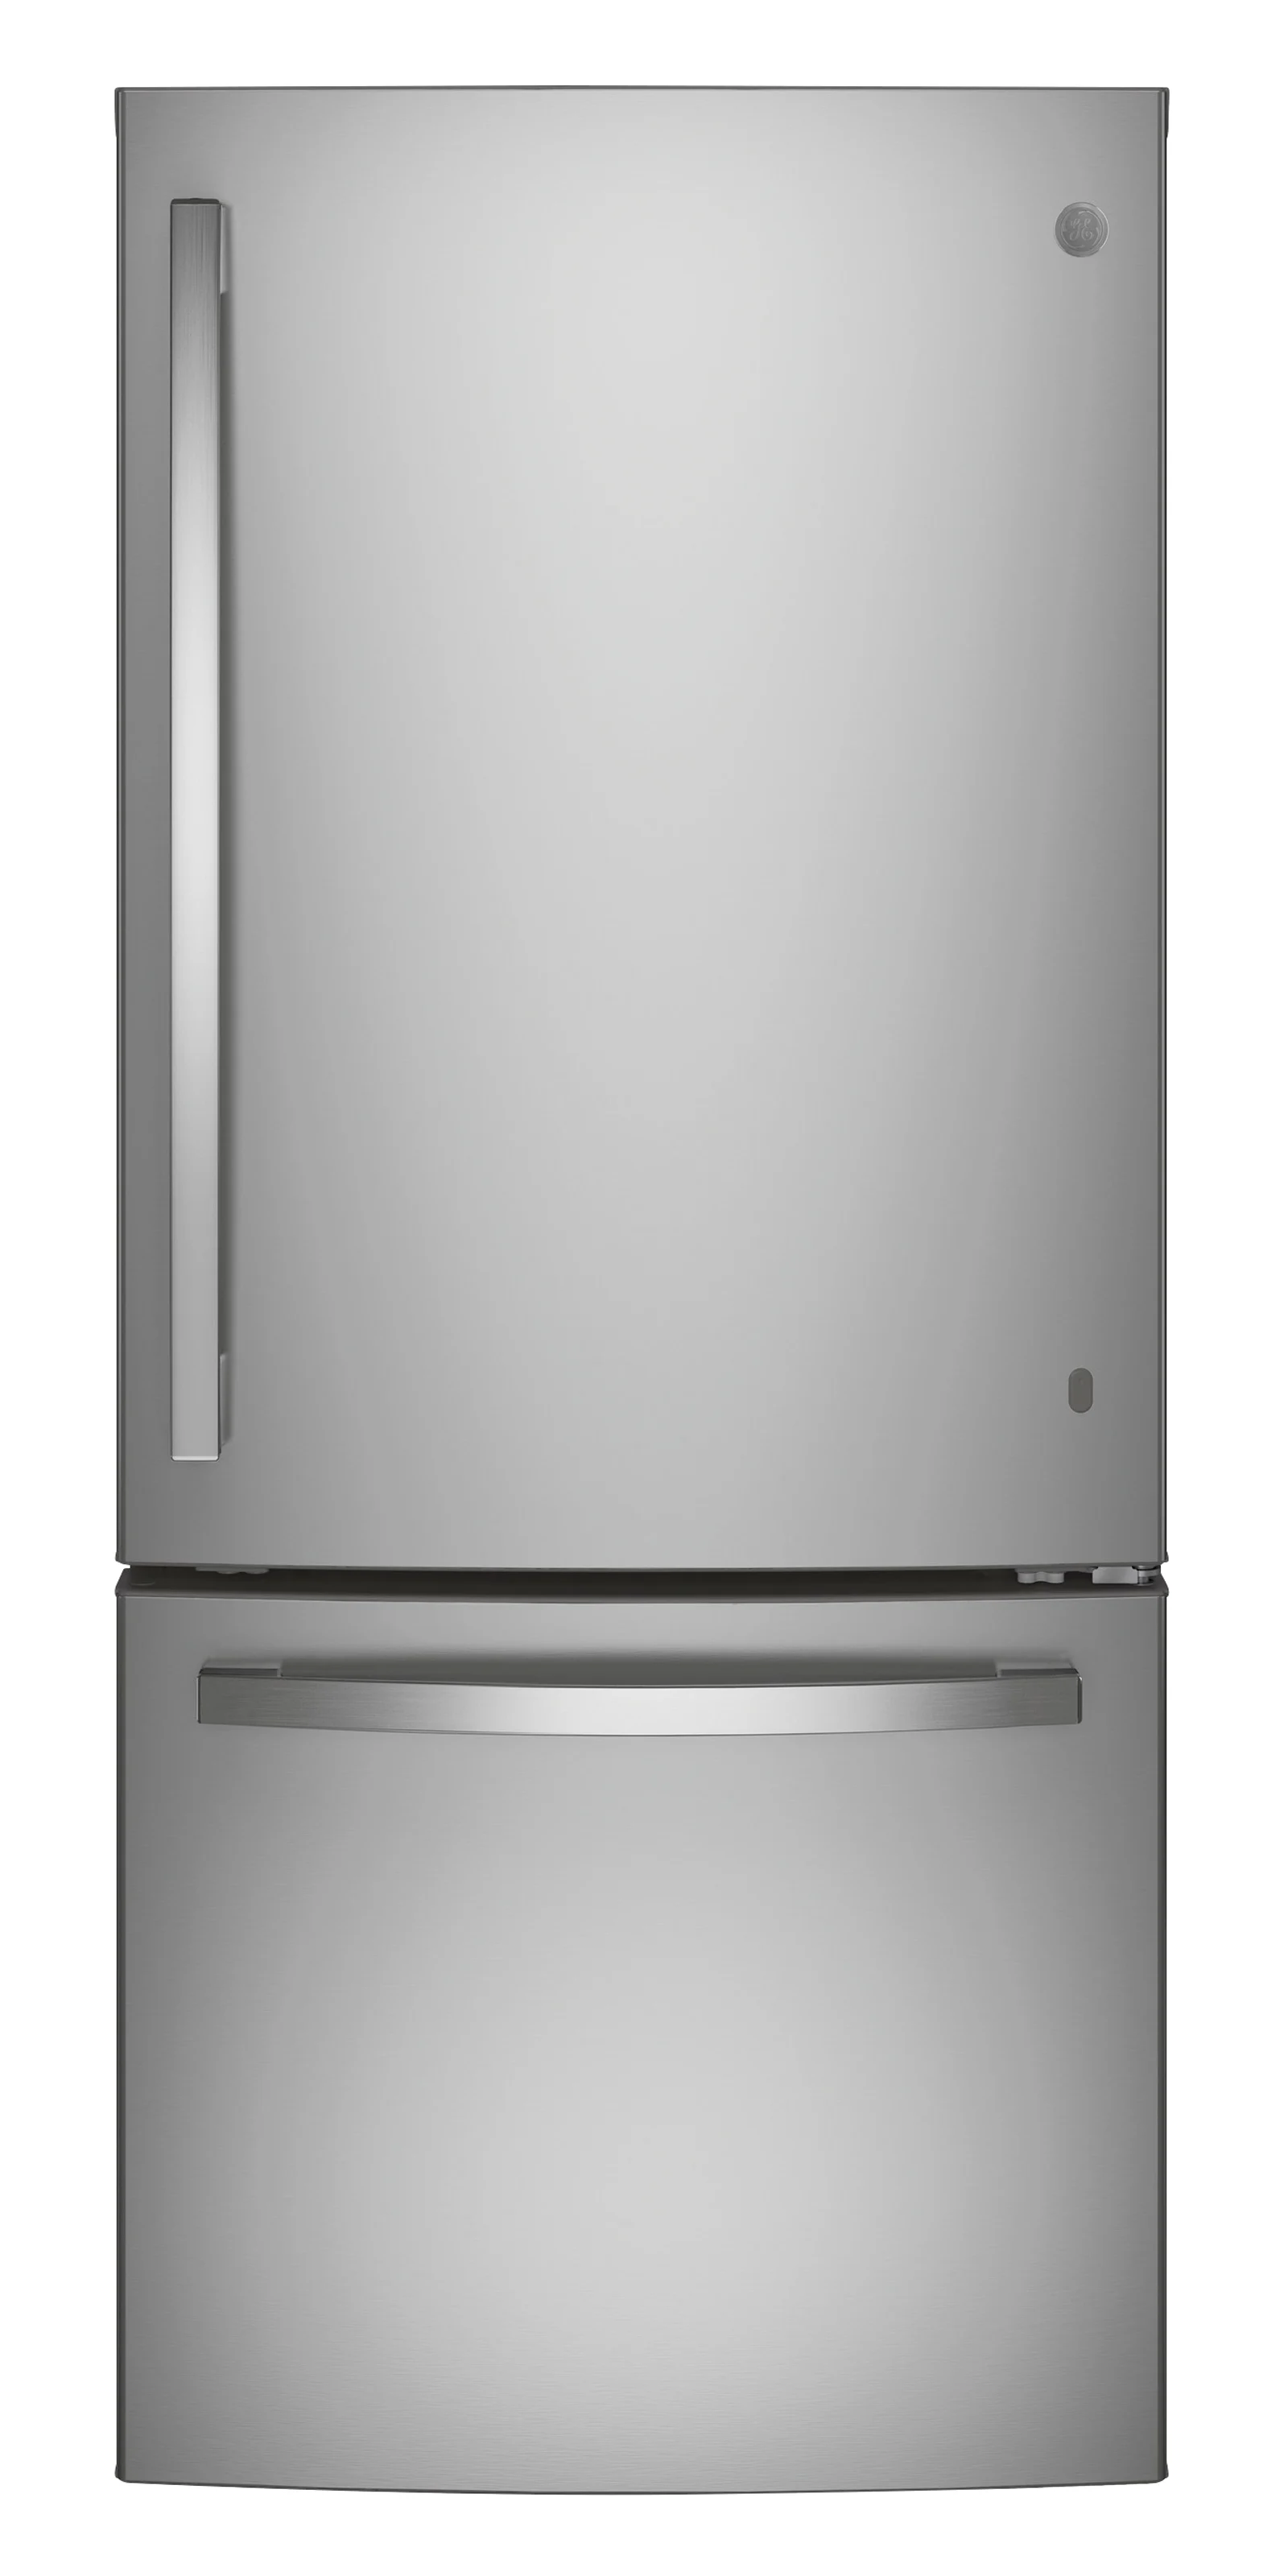 A bottom freezer refrigerator